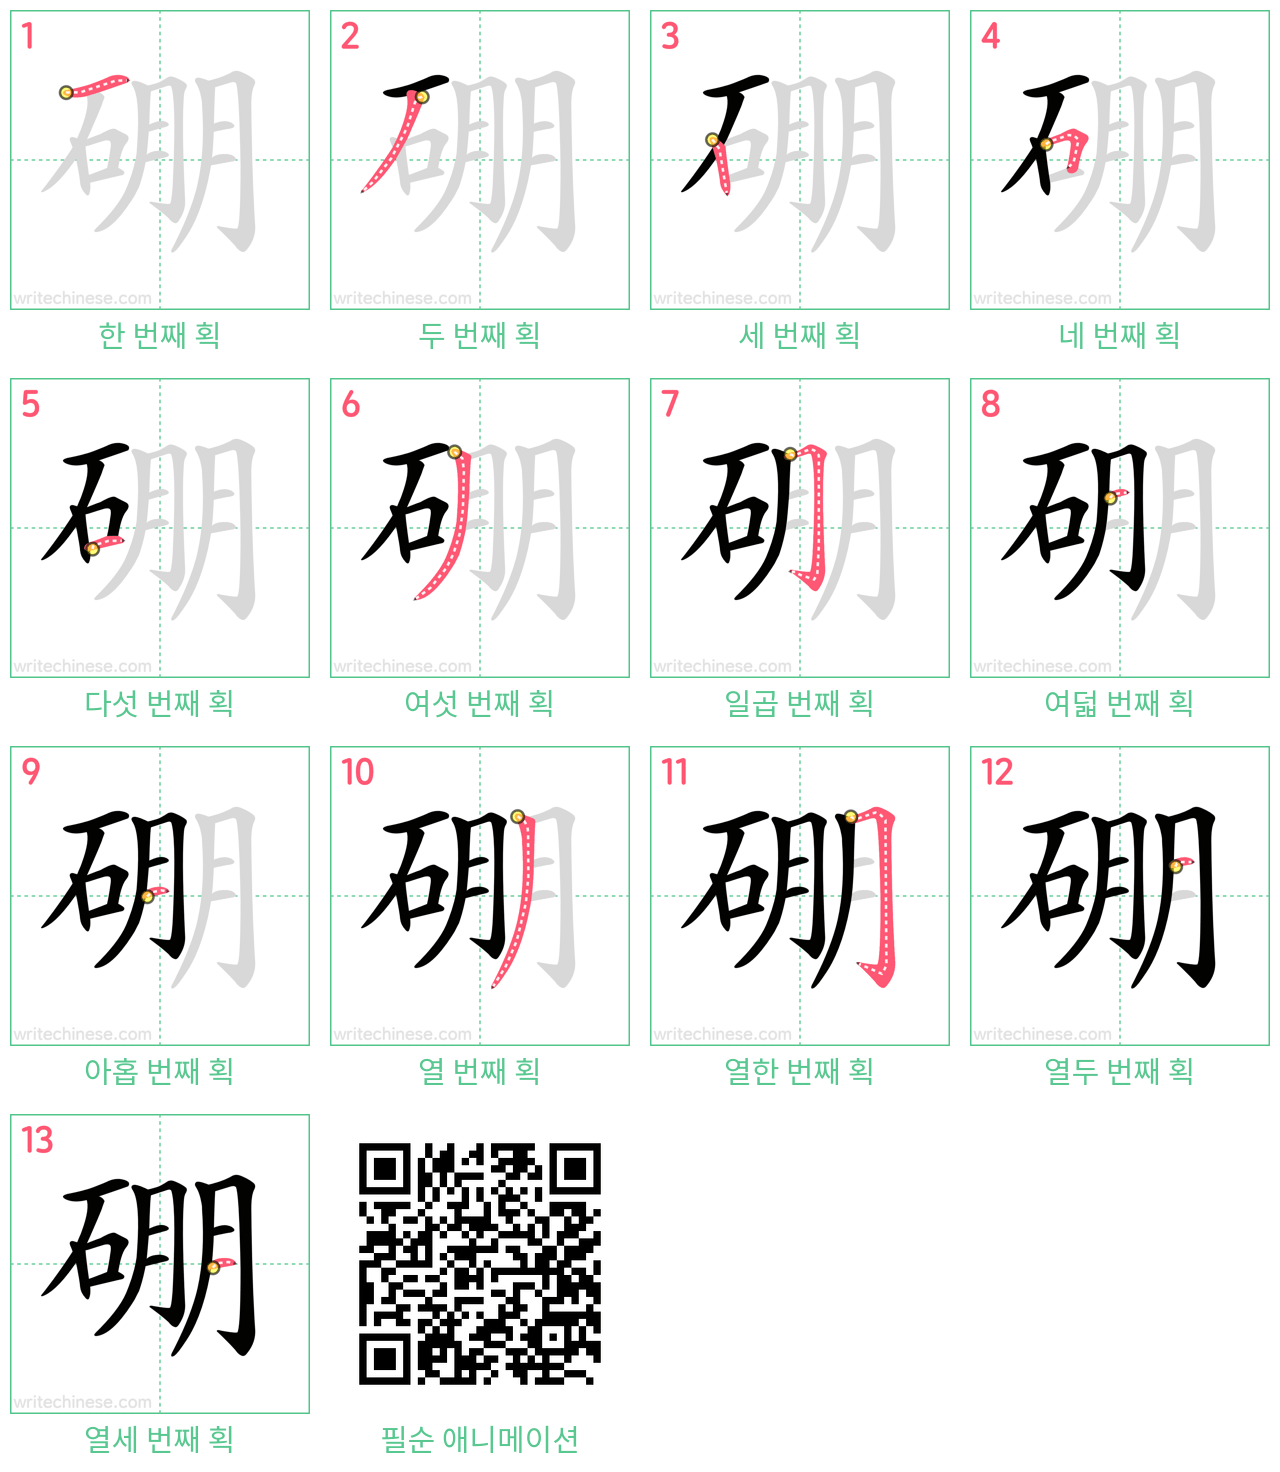 硼 step-by-step stroke order diagrams